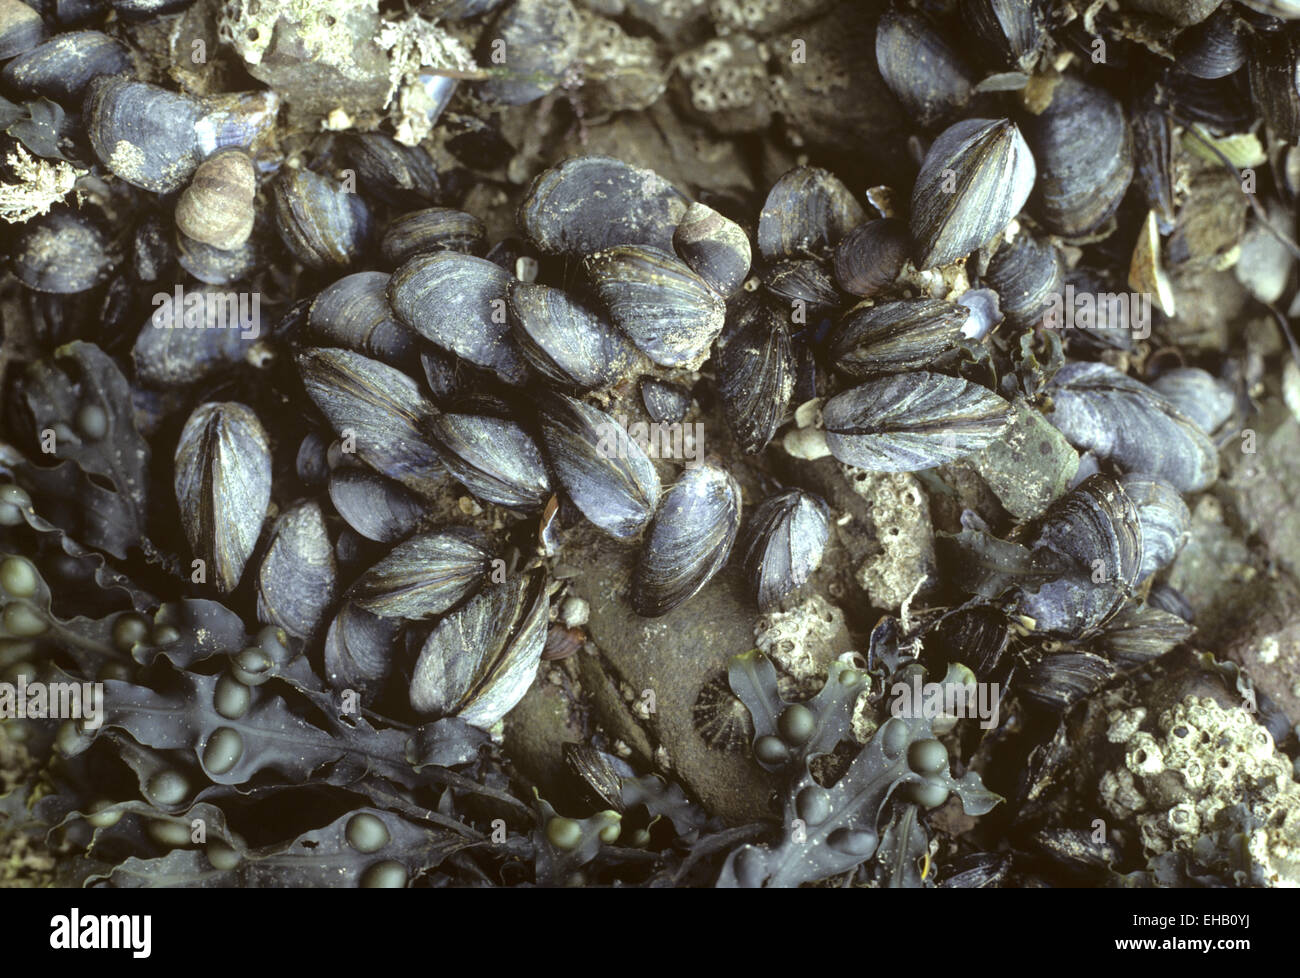 Common Mussel - Mytilus edulis Stock Photo